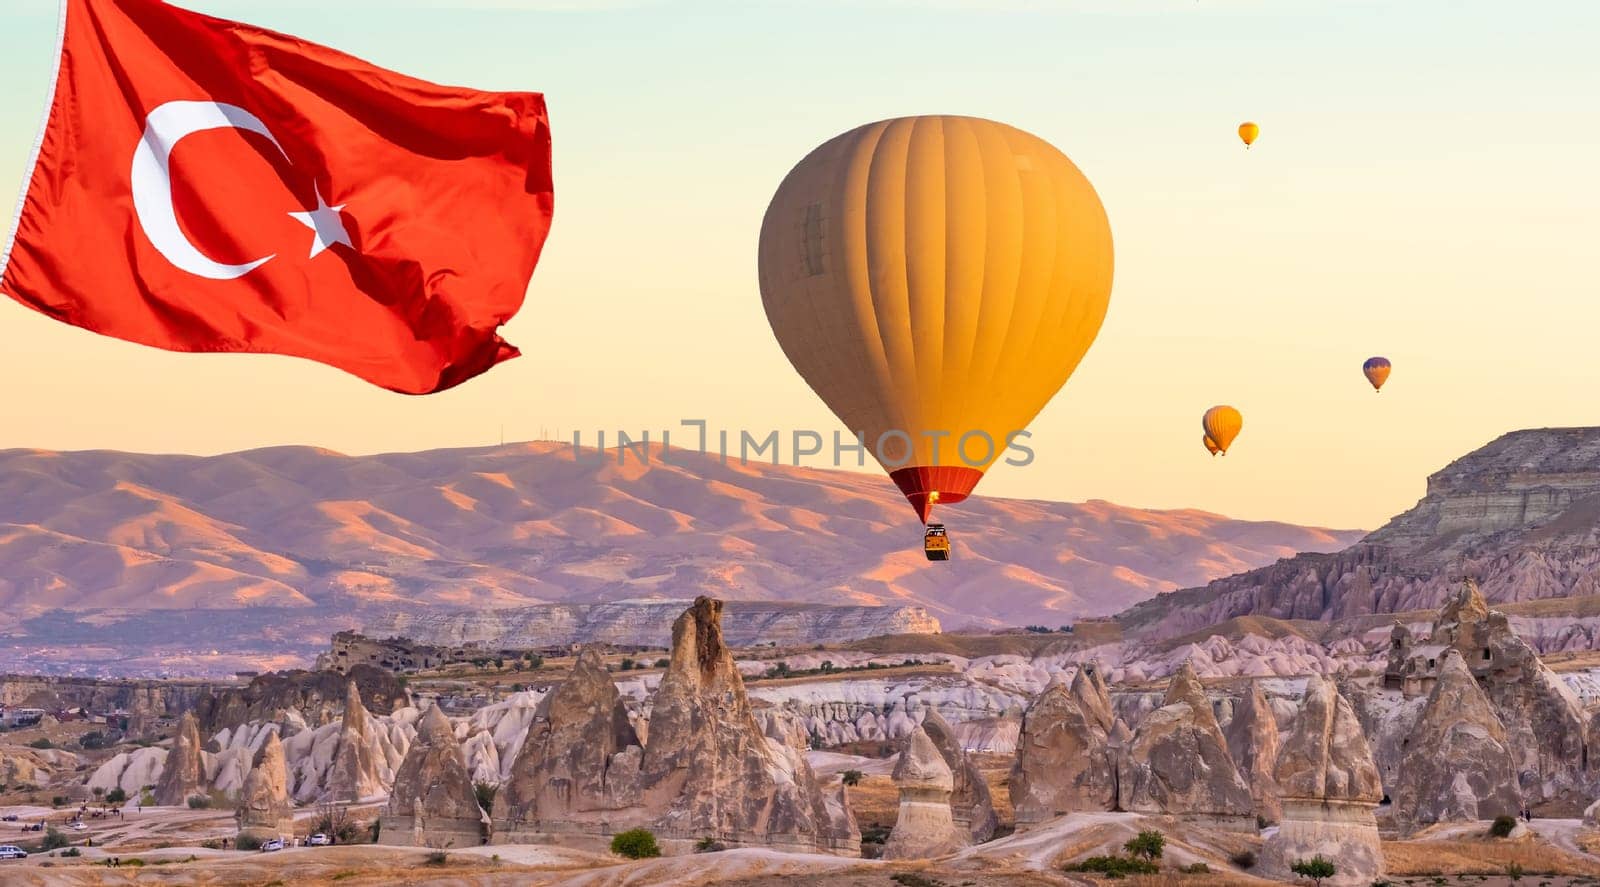 Hot air balloons in Cappadocia, Turkey by GekaSkr